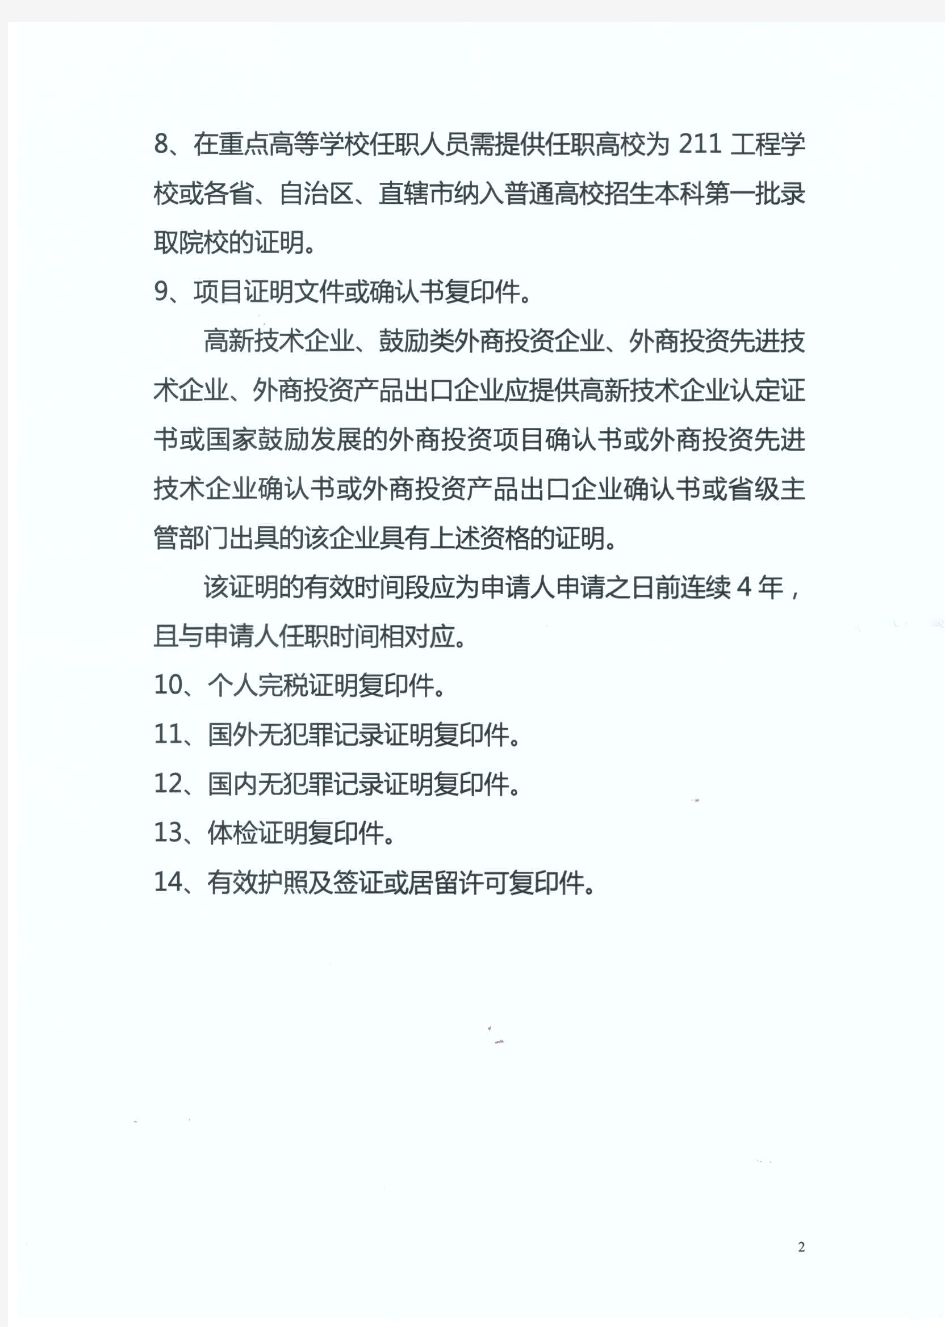 外籍人员申请在华永久居留证材料清单